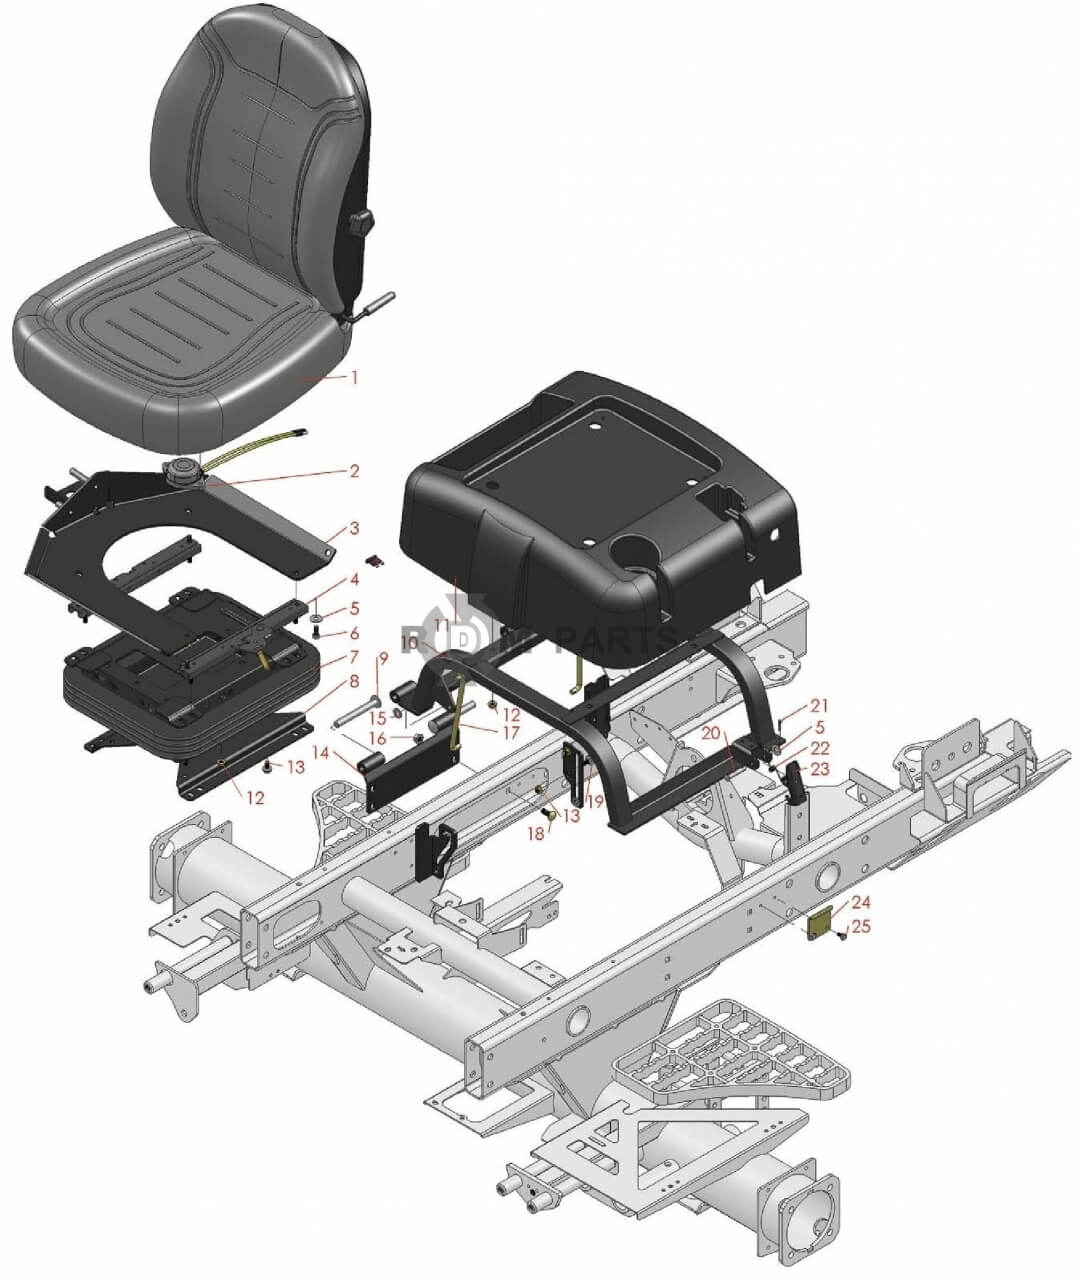 Replacement parts for RM 5210D 5410D 5510D & 5610D Seat